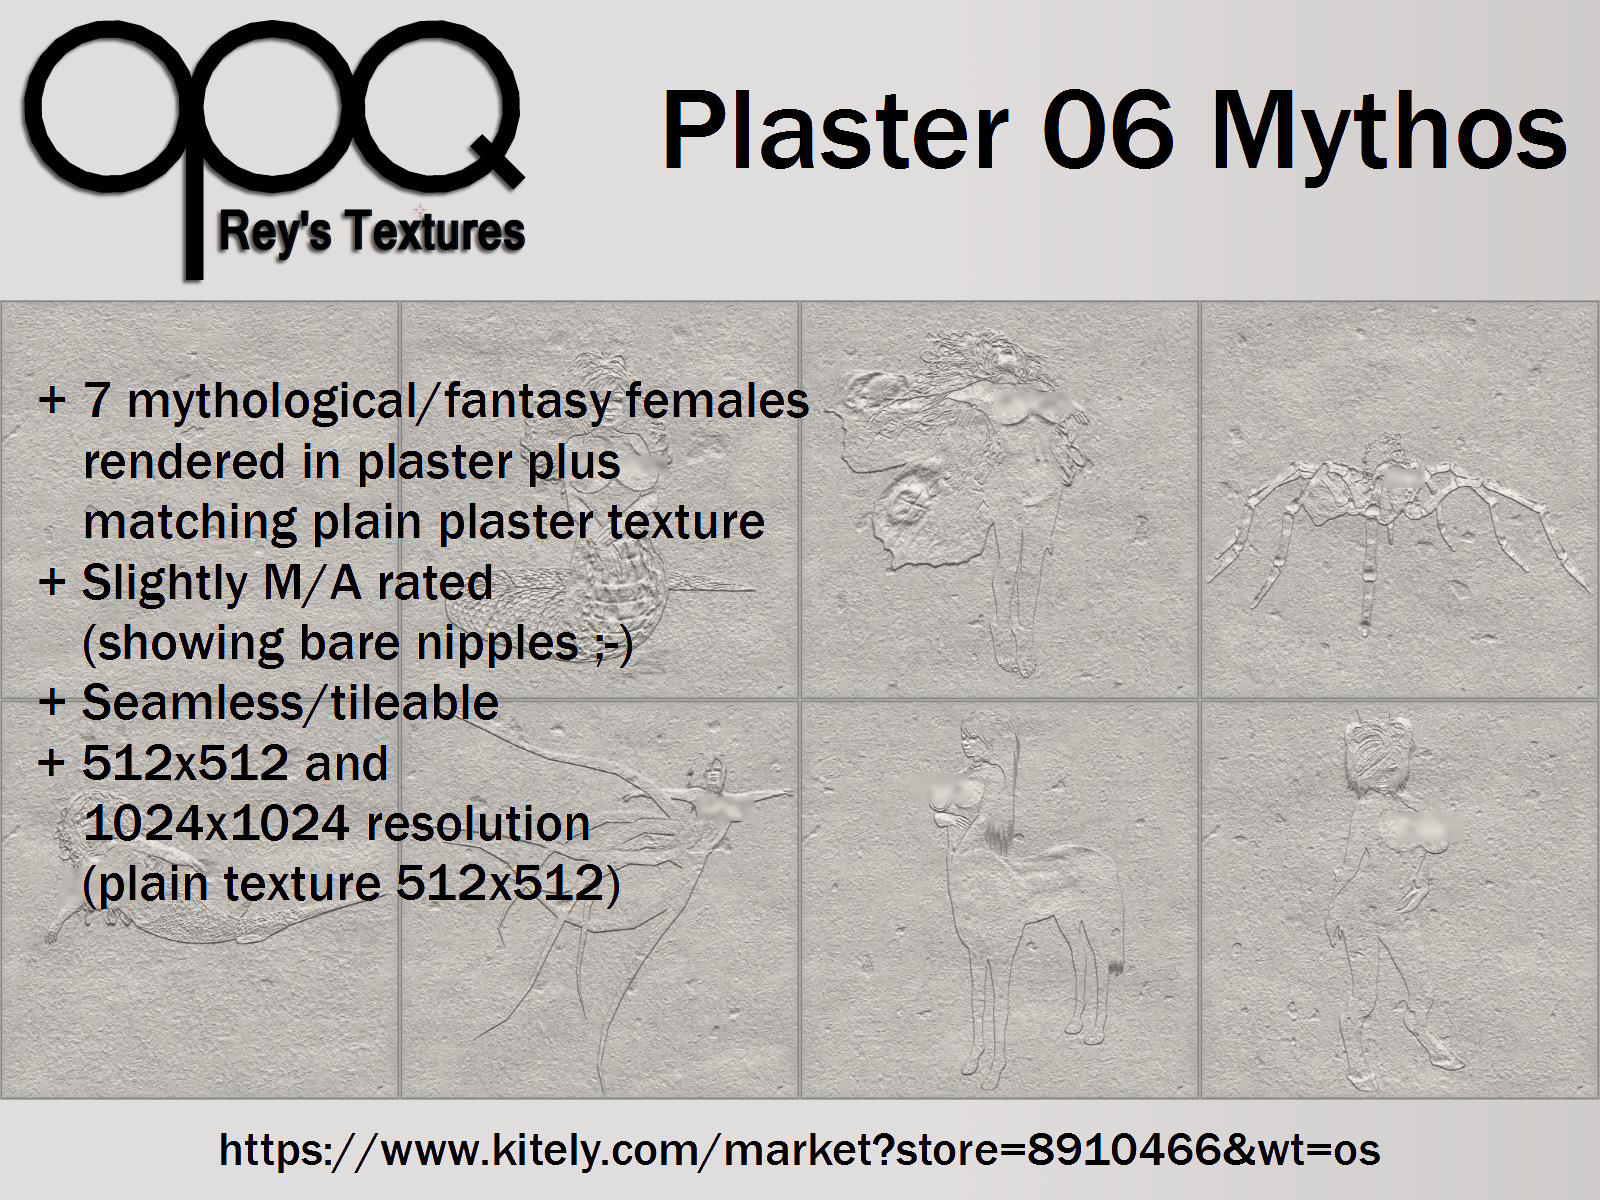 Rey's Plaster 06 Mythos poster Kitely.jpg